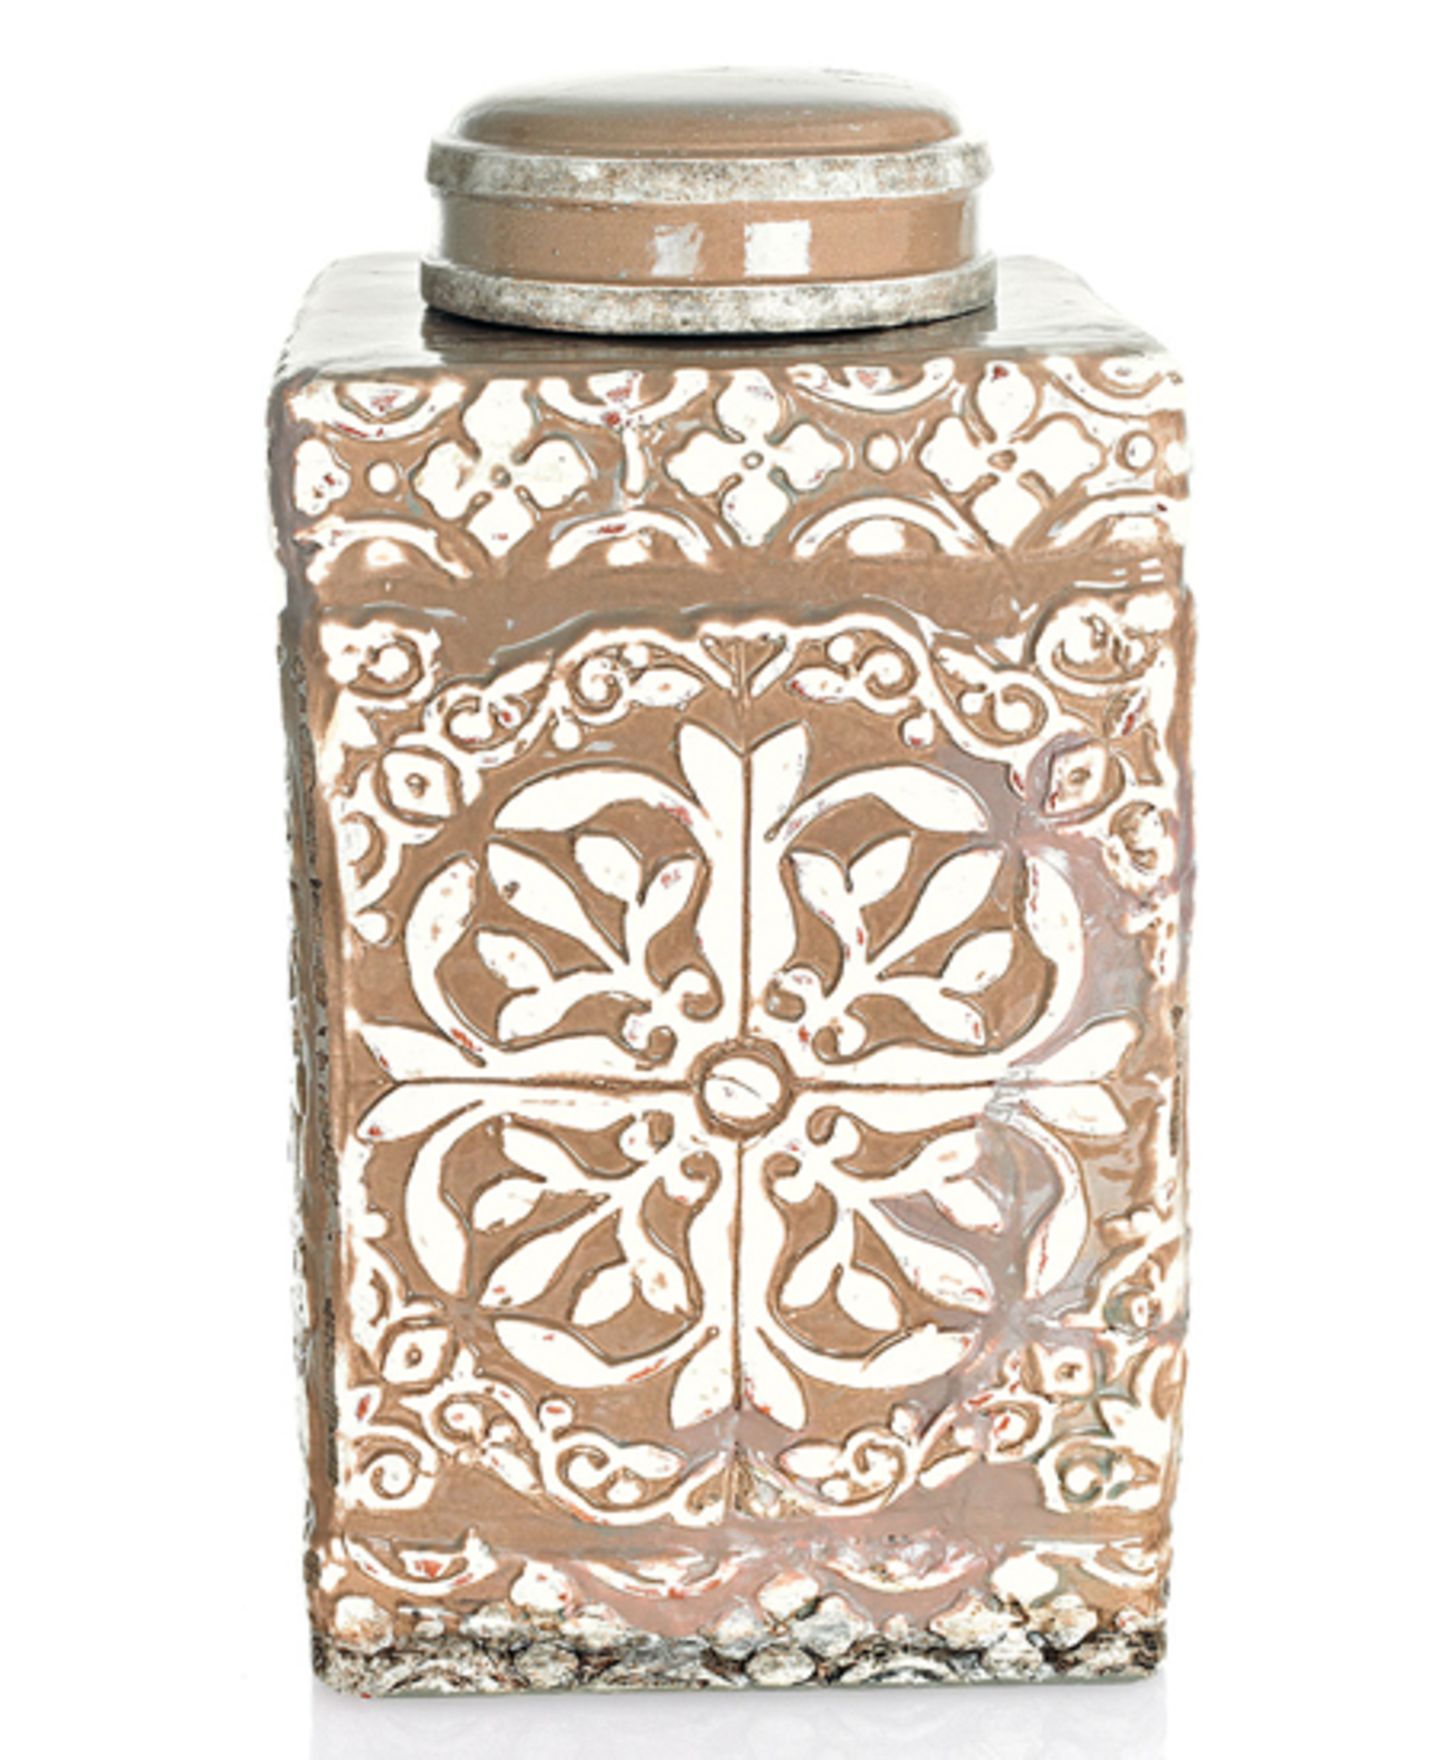 Hübsche Teedose im Antik-Look mit ornamentalem Muster von Impressionen, um 50 Euro.